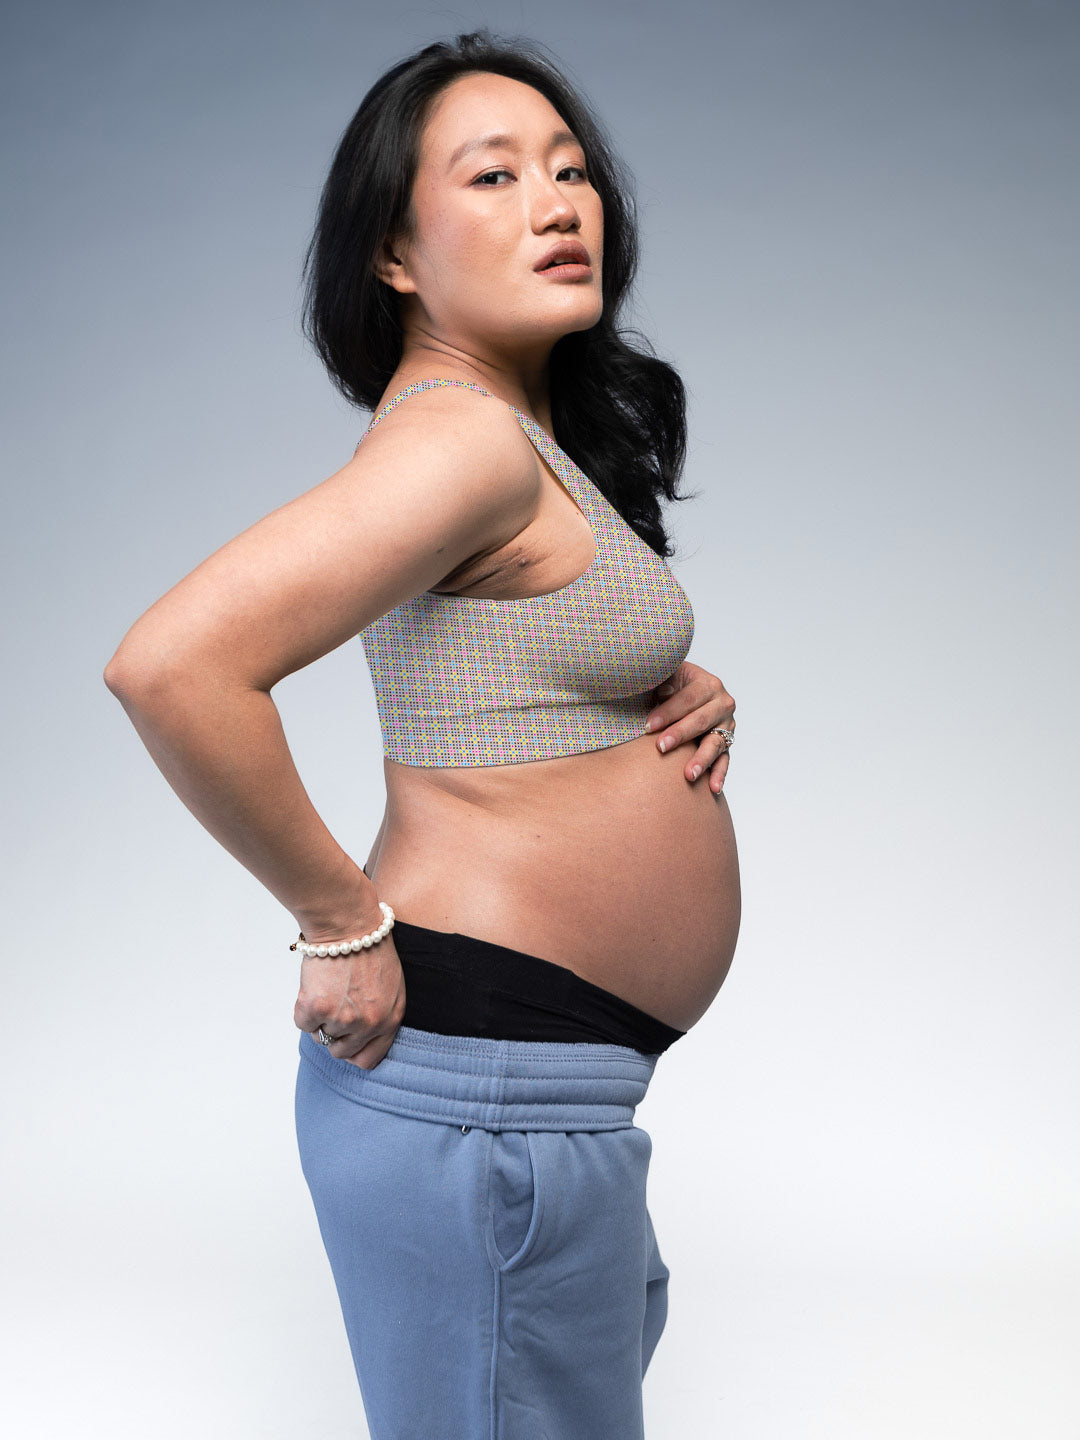 Buy Nursing Friendly Maternity Bras for New Moms Online - Tailor